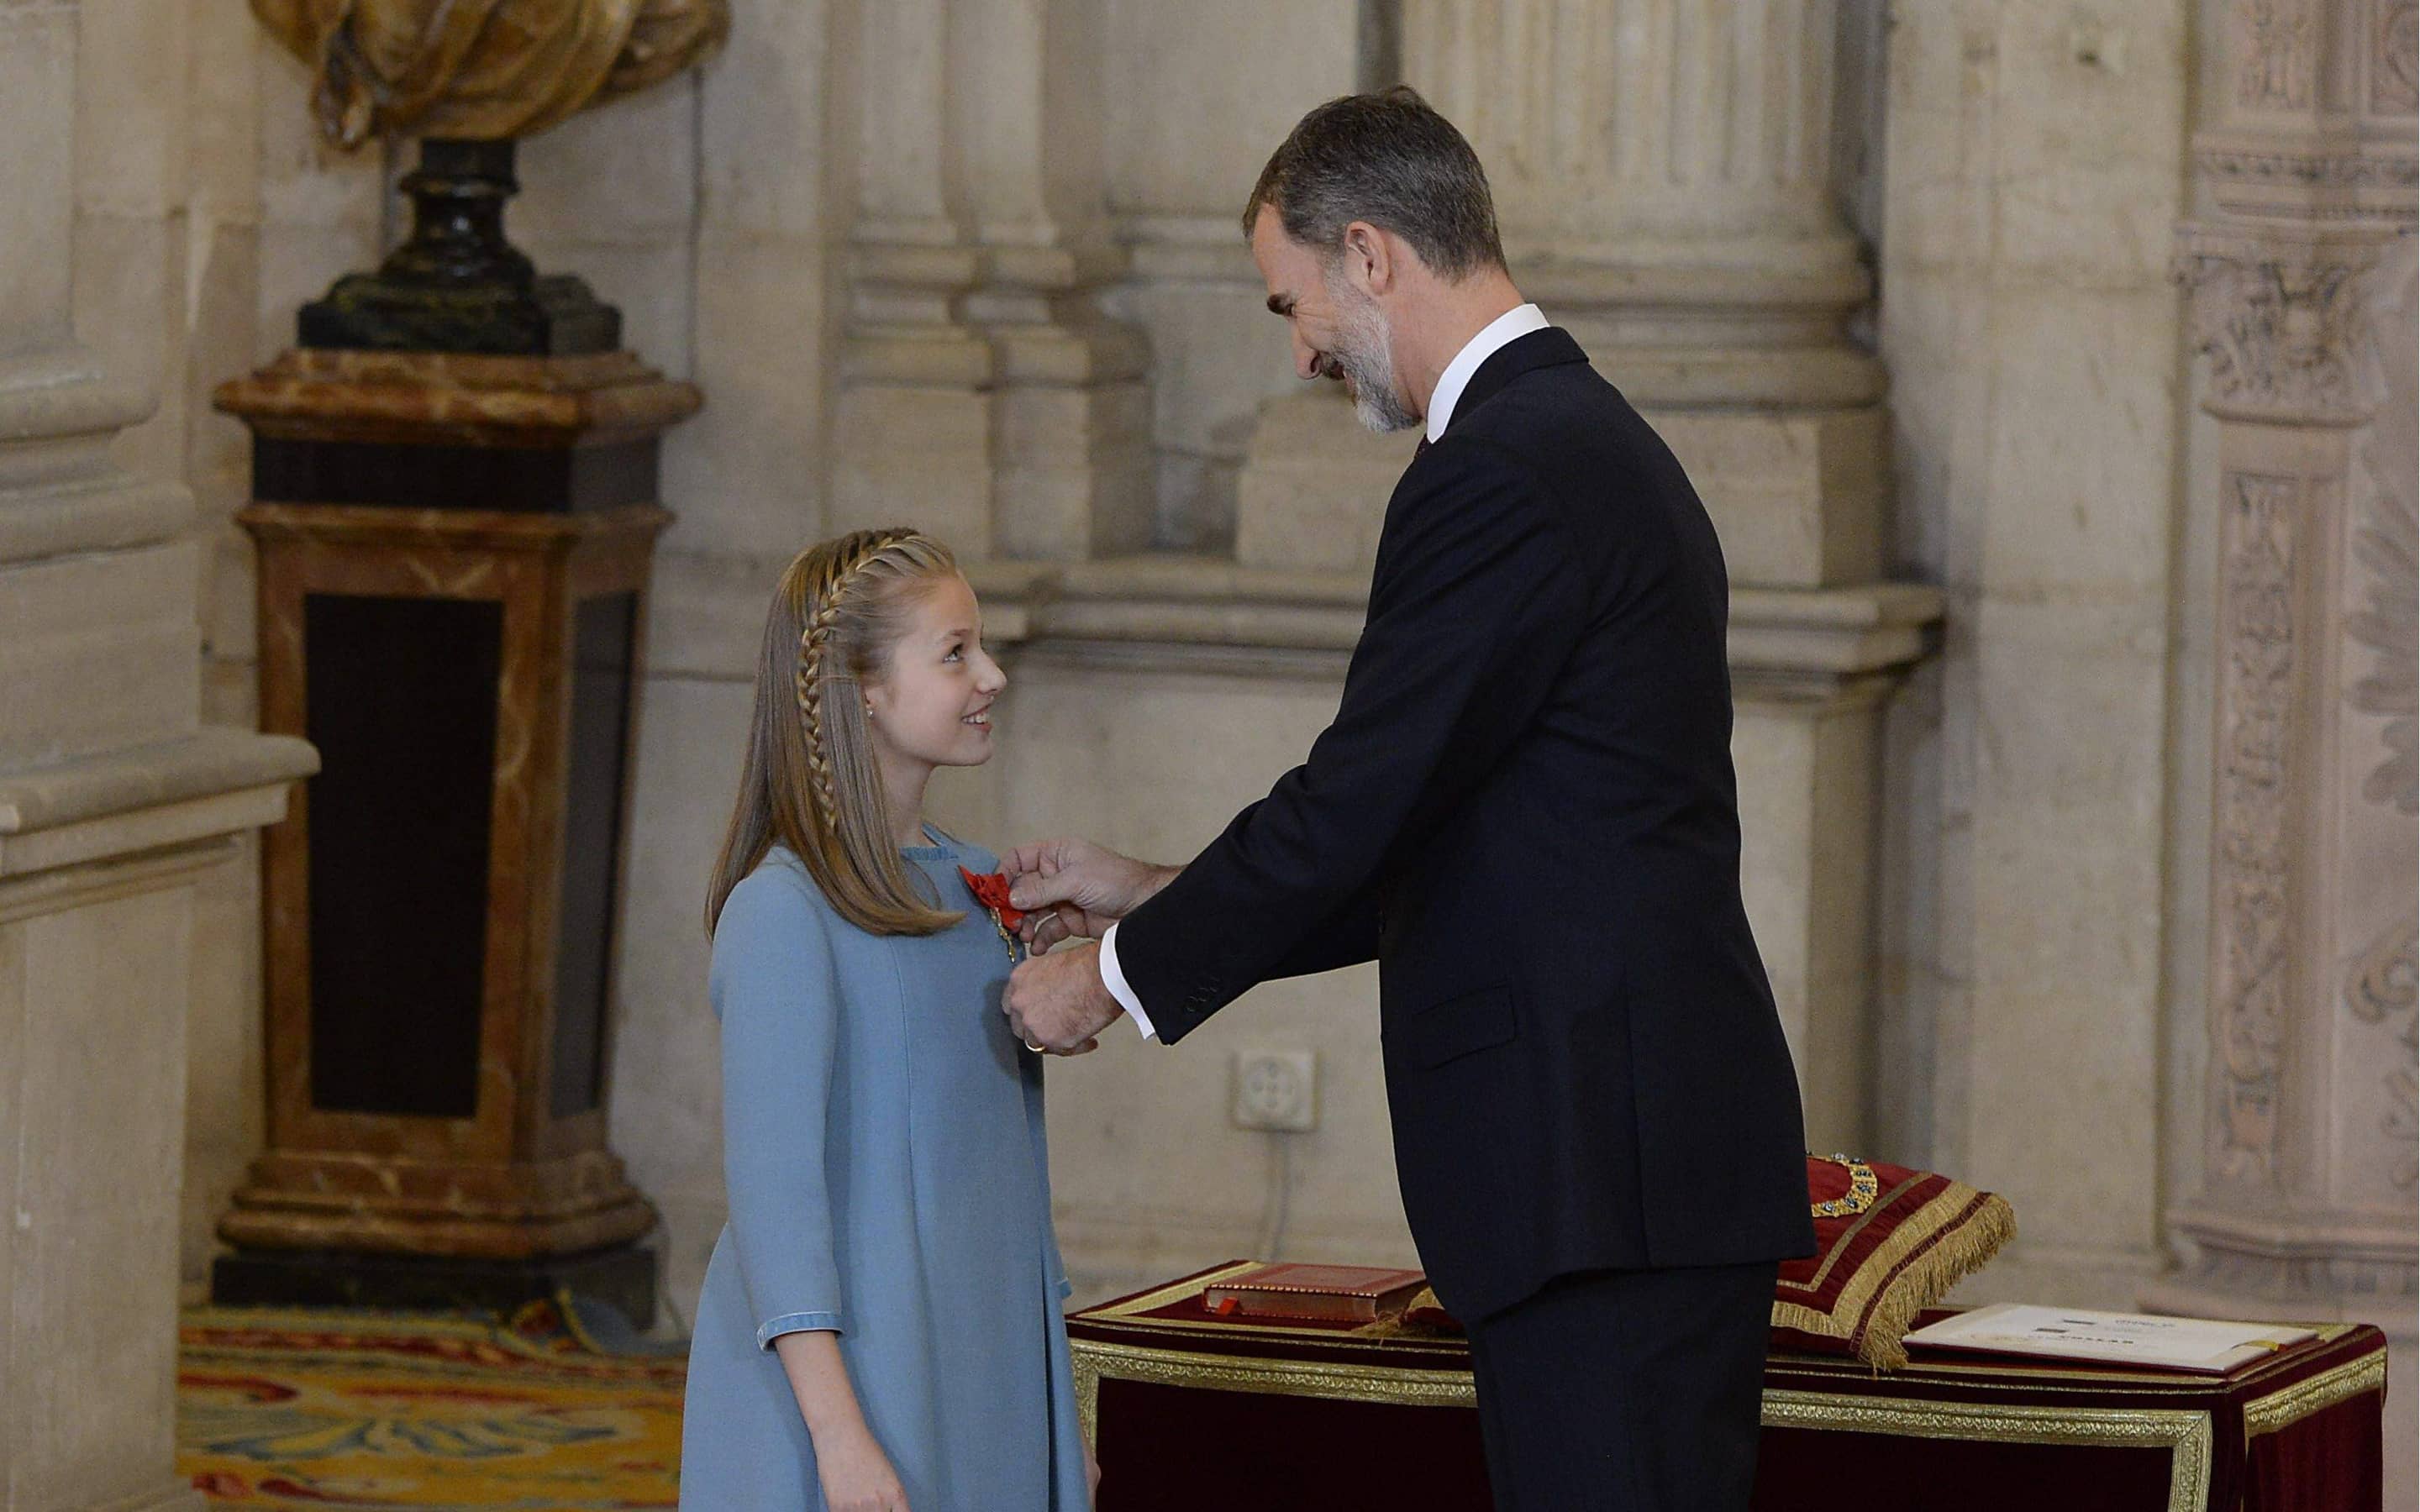 2018 erhielt Leonor von ihrem Vater König Felipe VI. den Orden vom Goldenen Vlies - die höchste Auszeichnung, die der König zu vergeben hat.